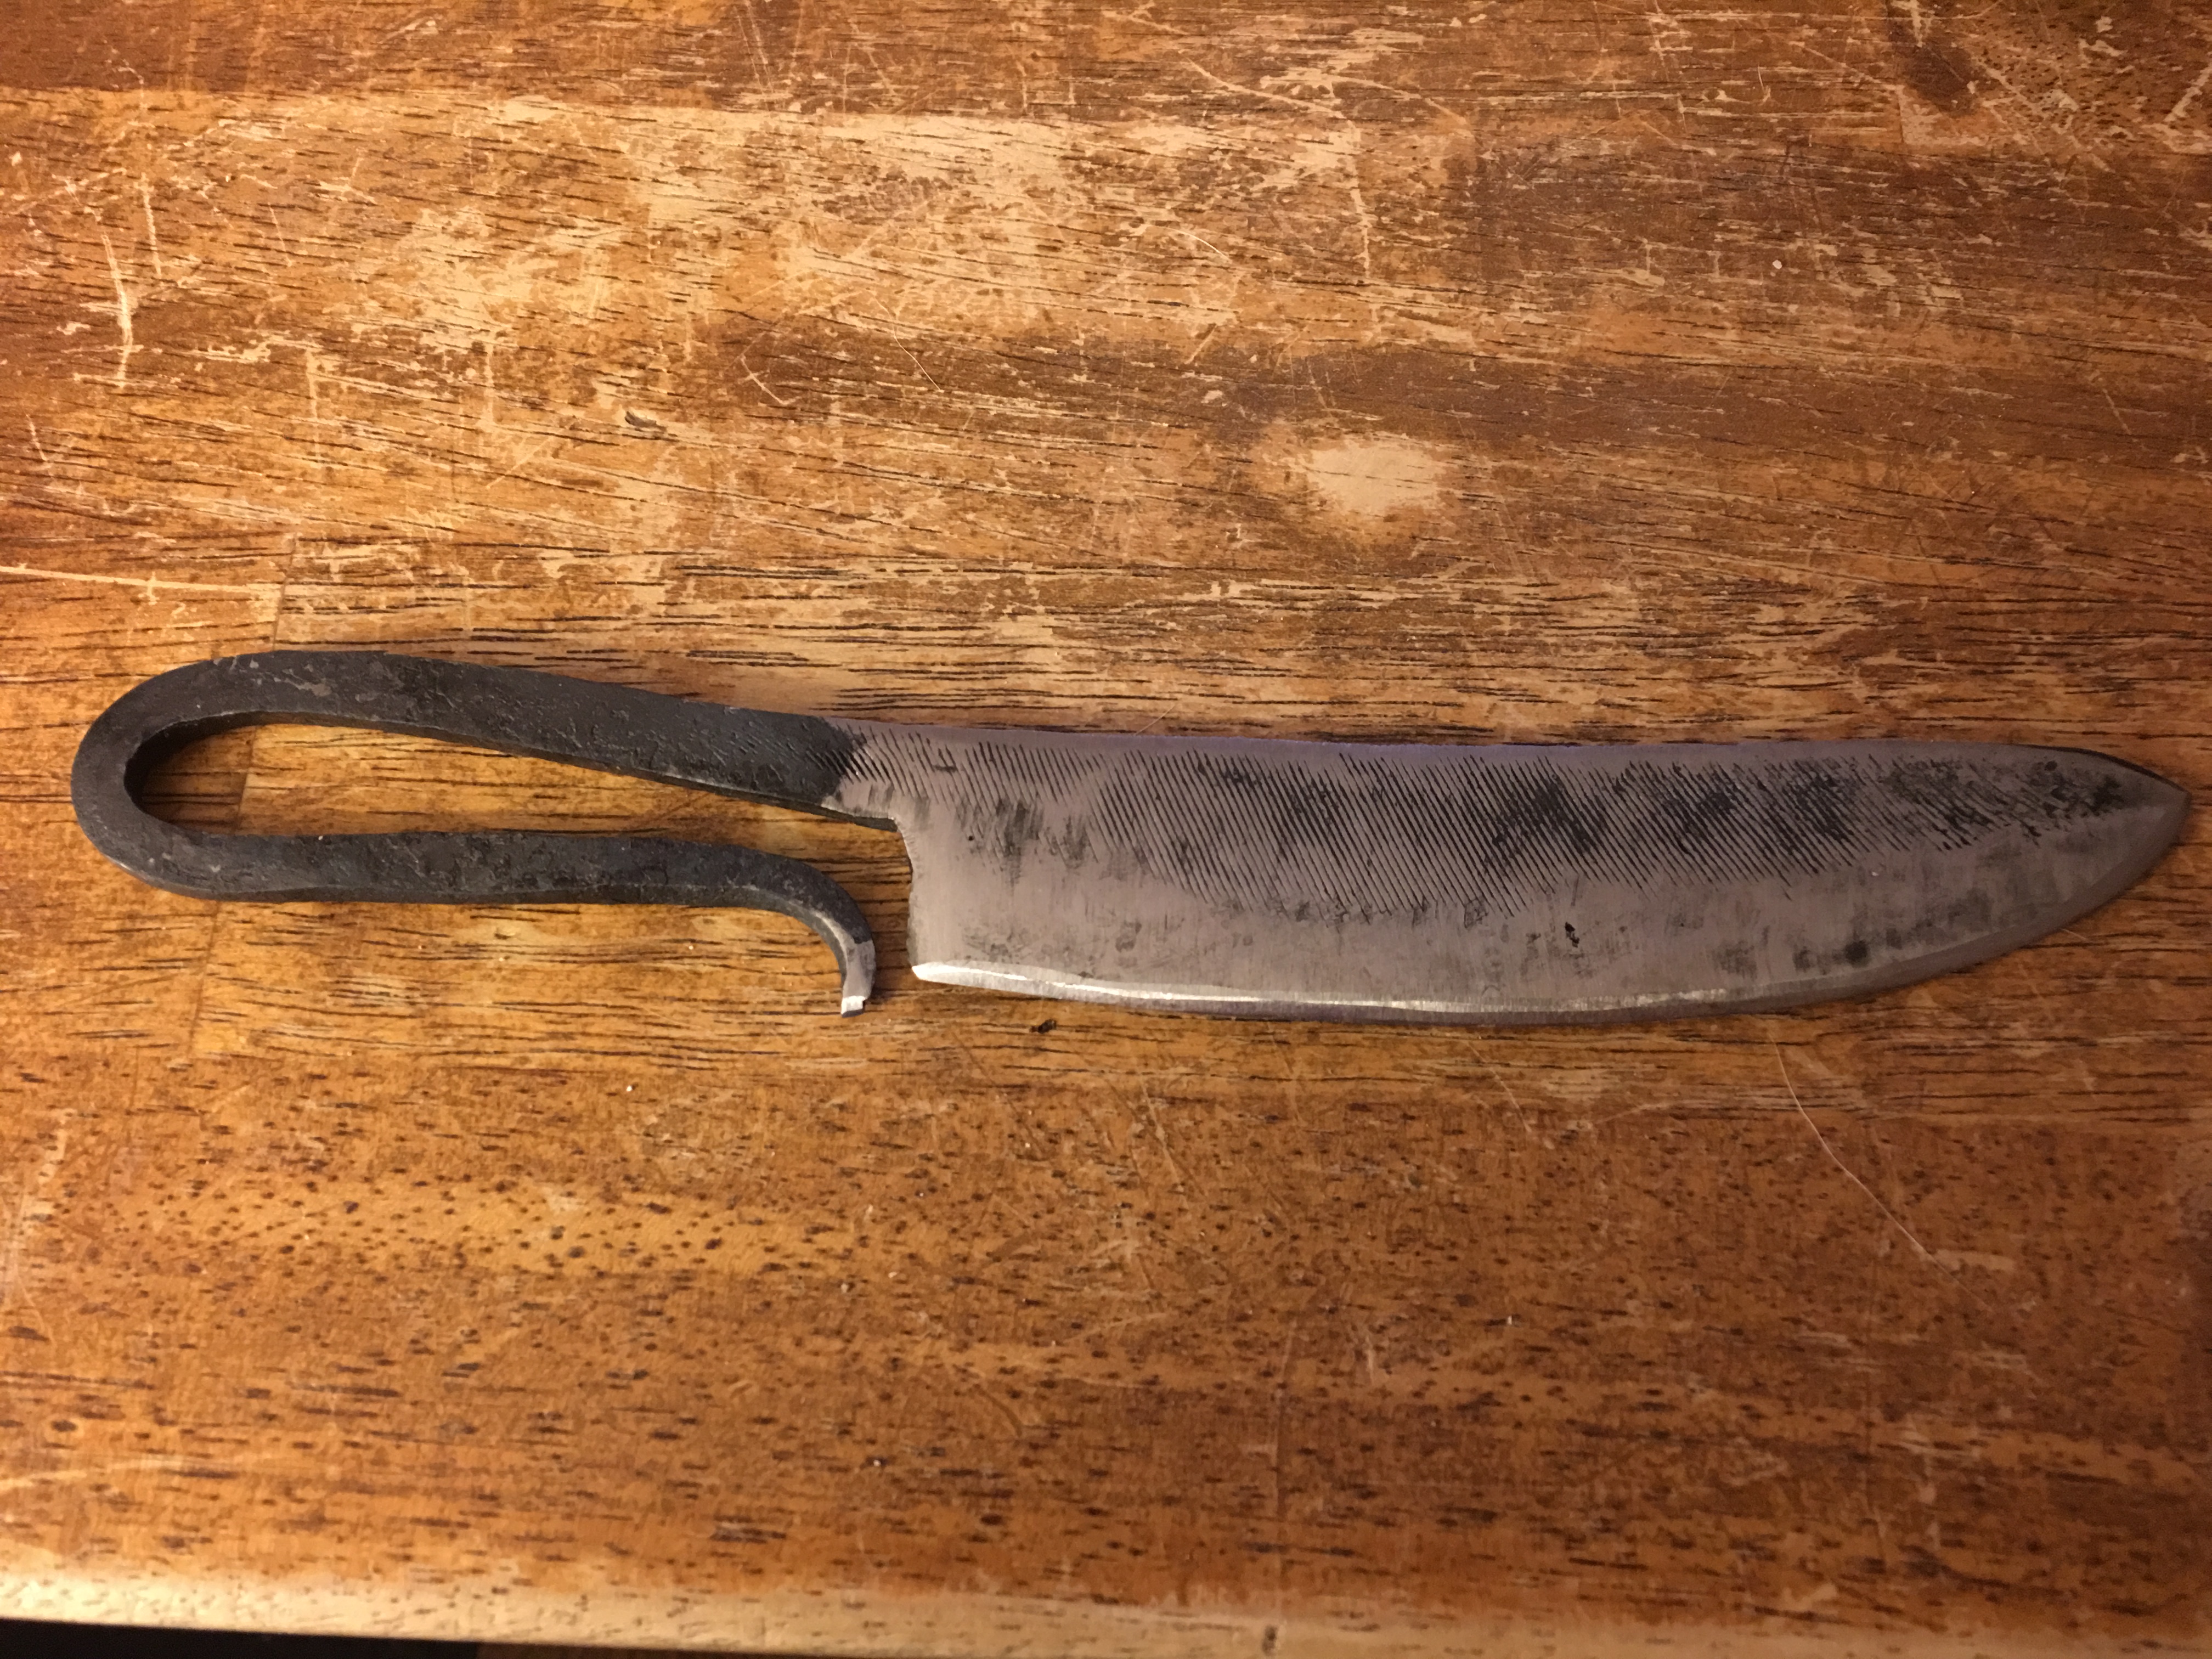 Tried A File Knife Knife Making I Forge Iron